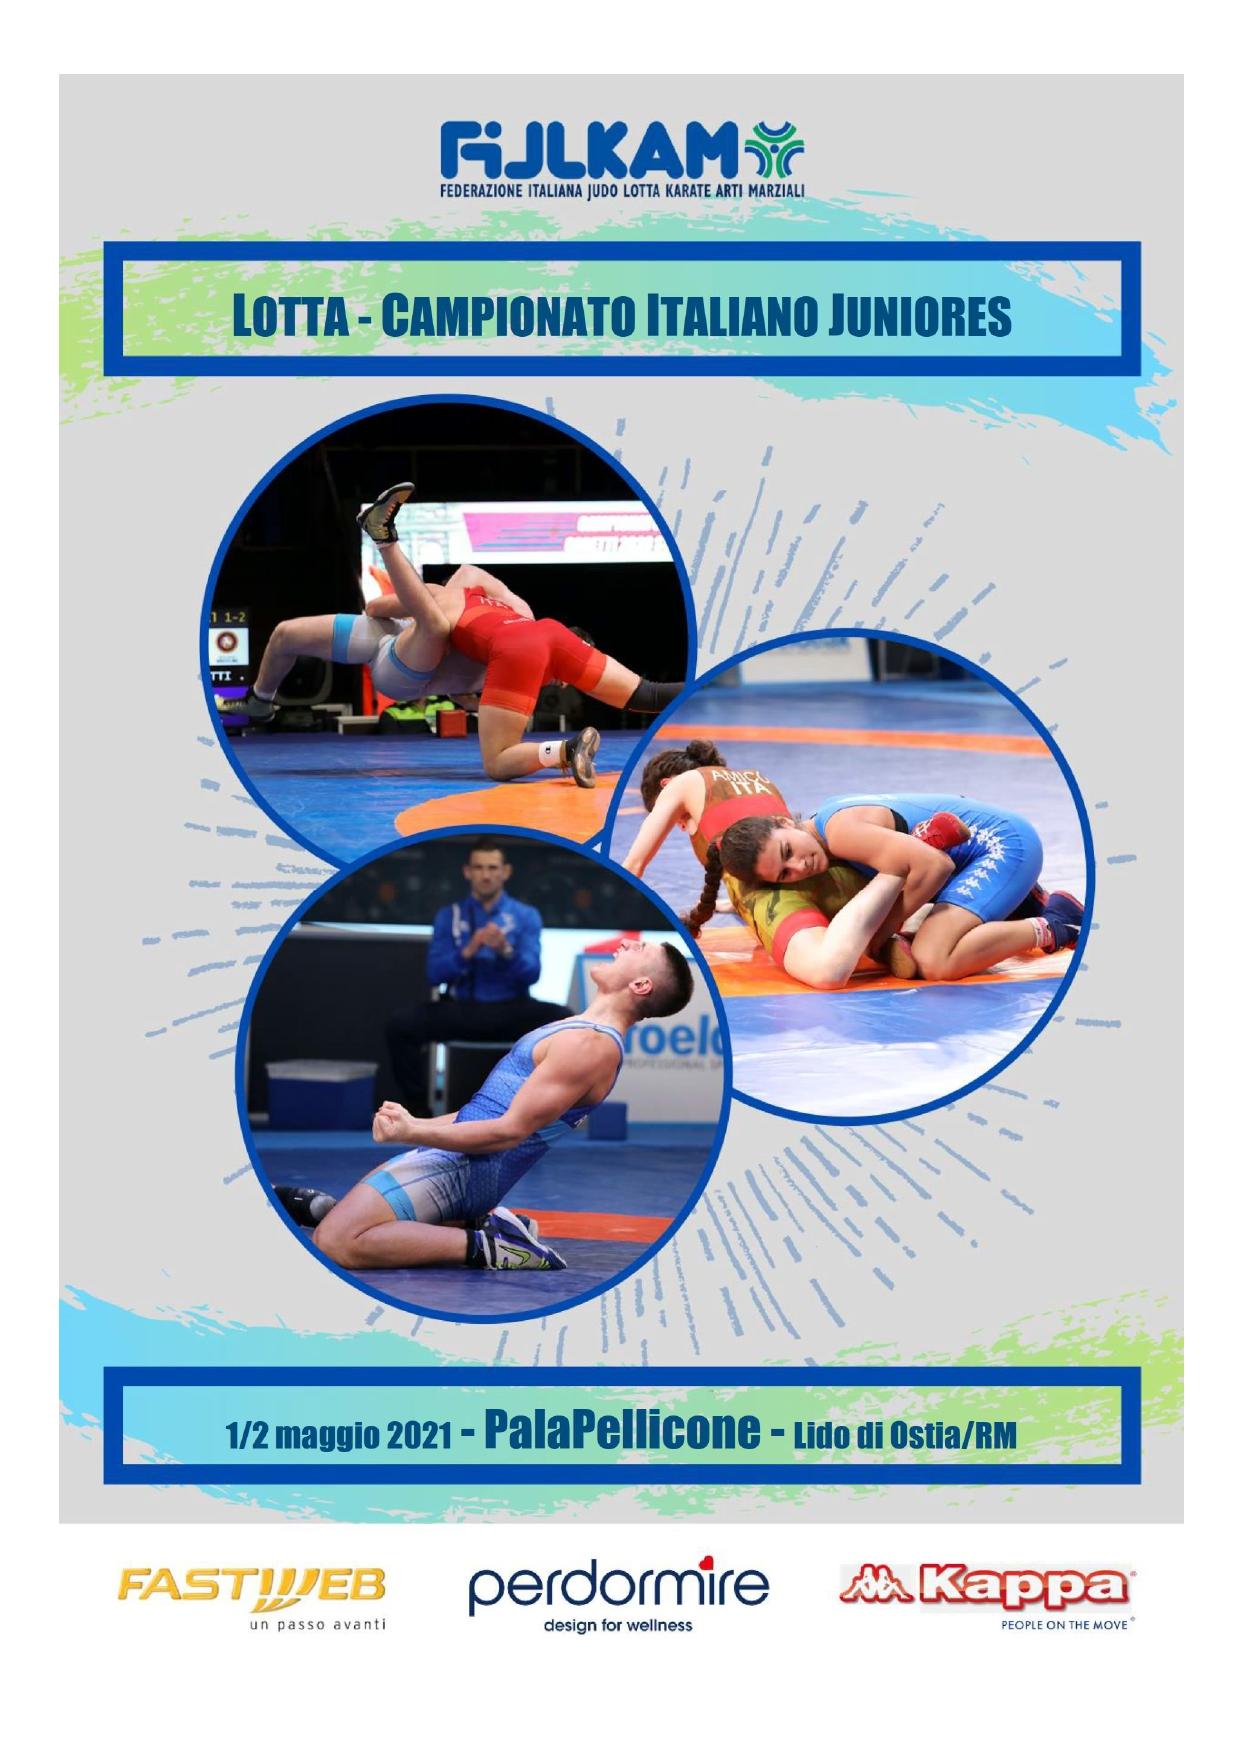 images/LOTTA/large/large/Lotta_Campionato_Juniores_2021.jpg